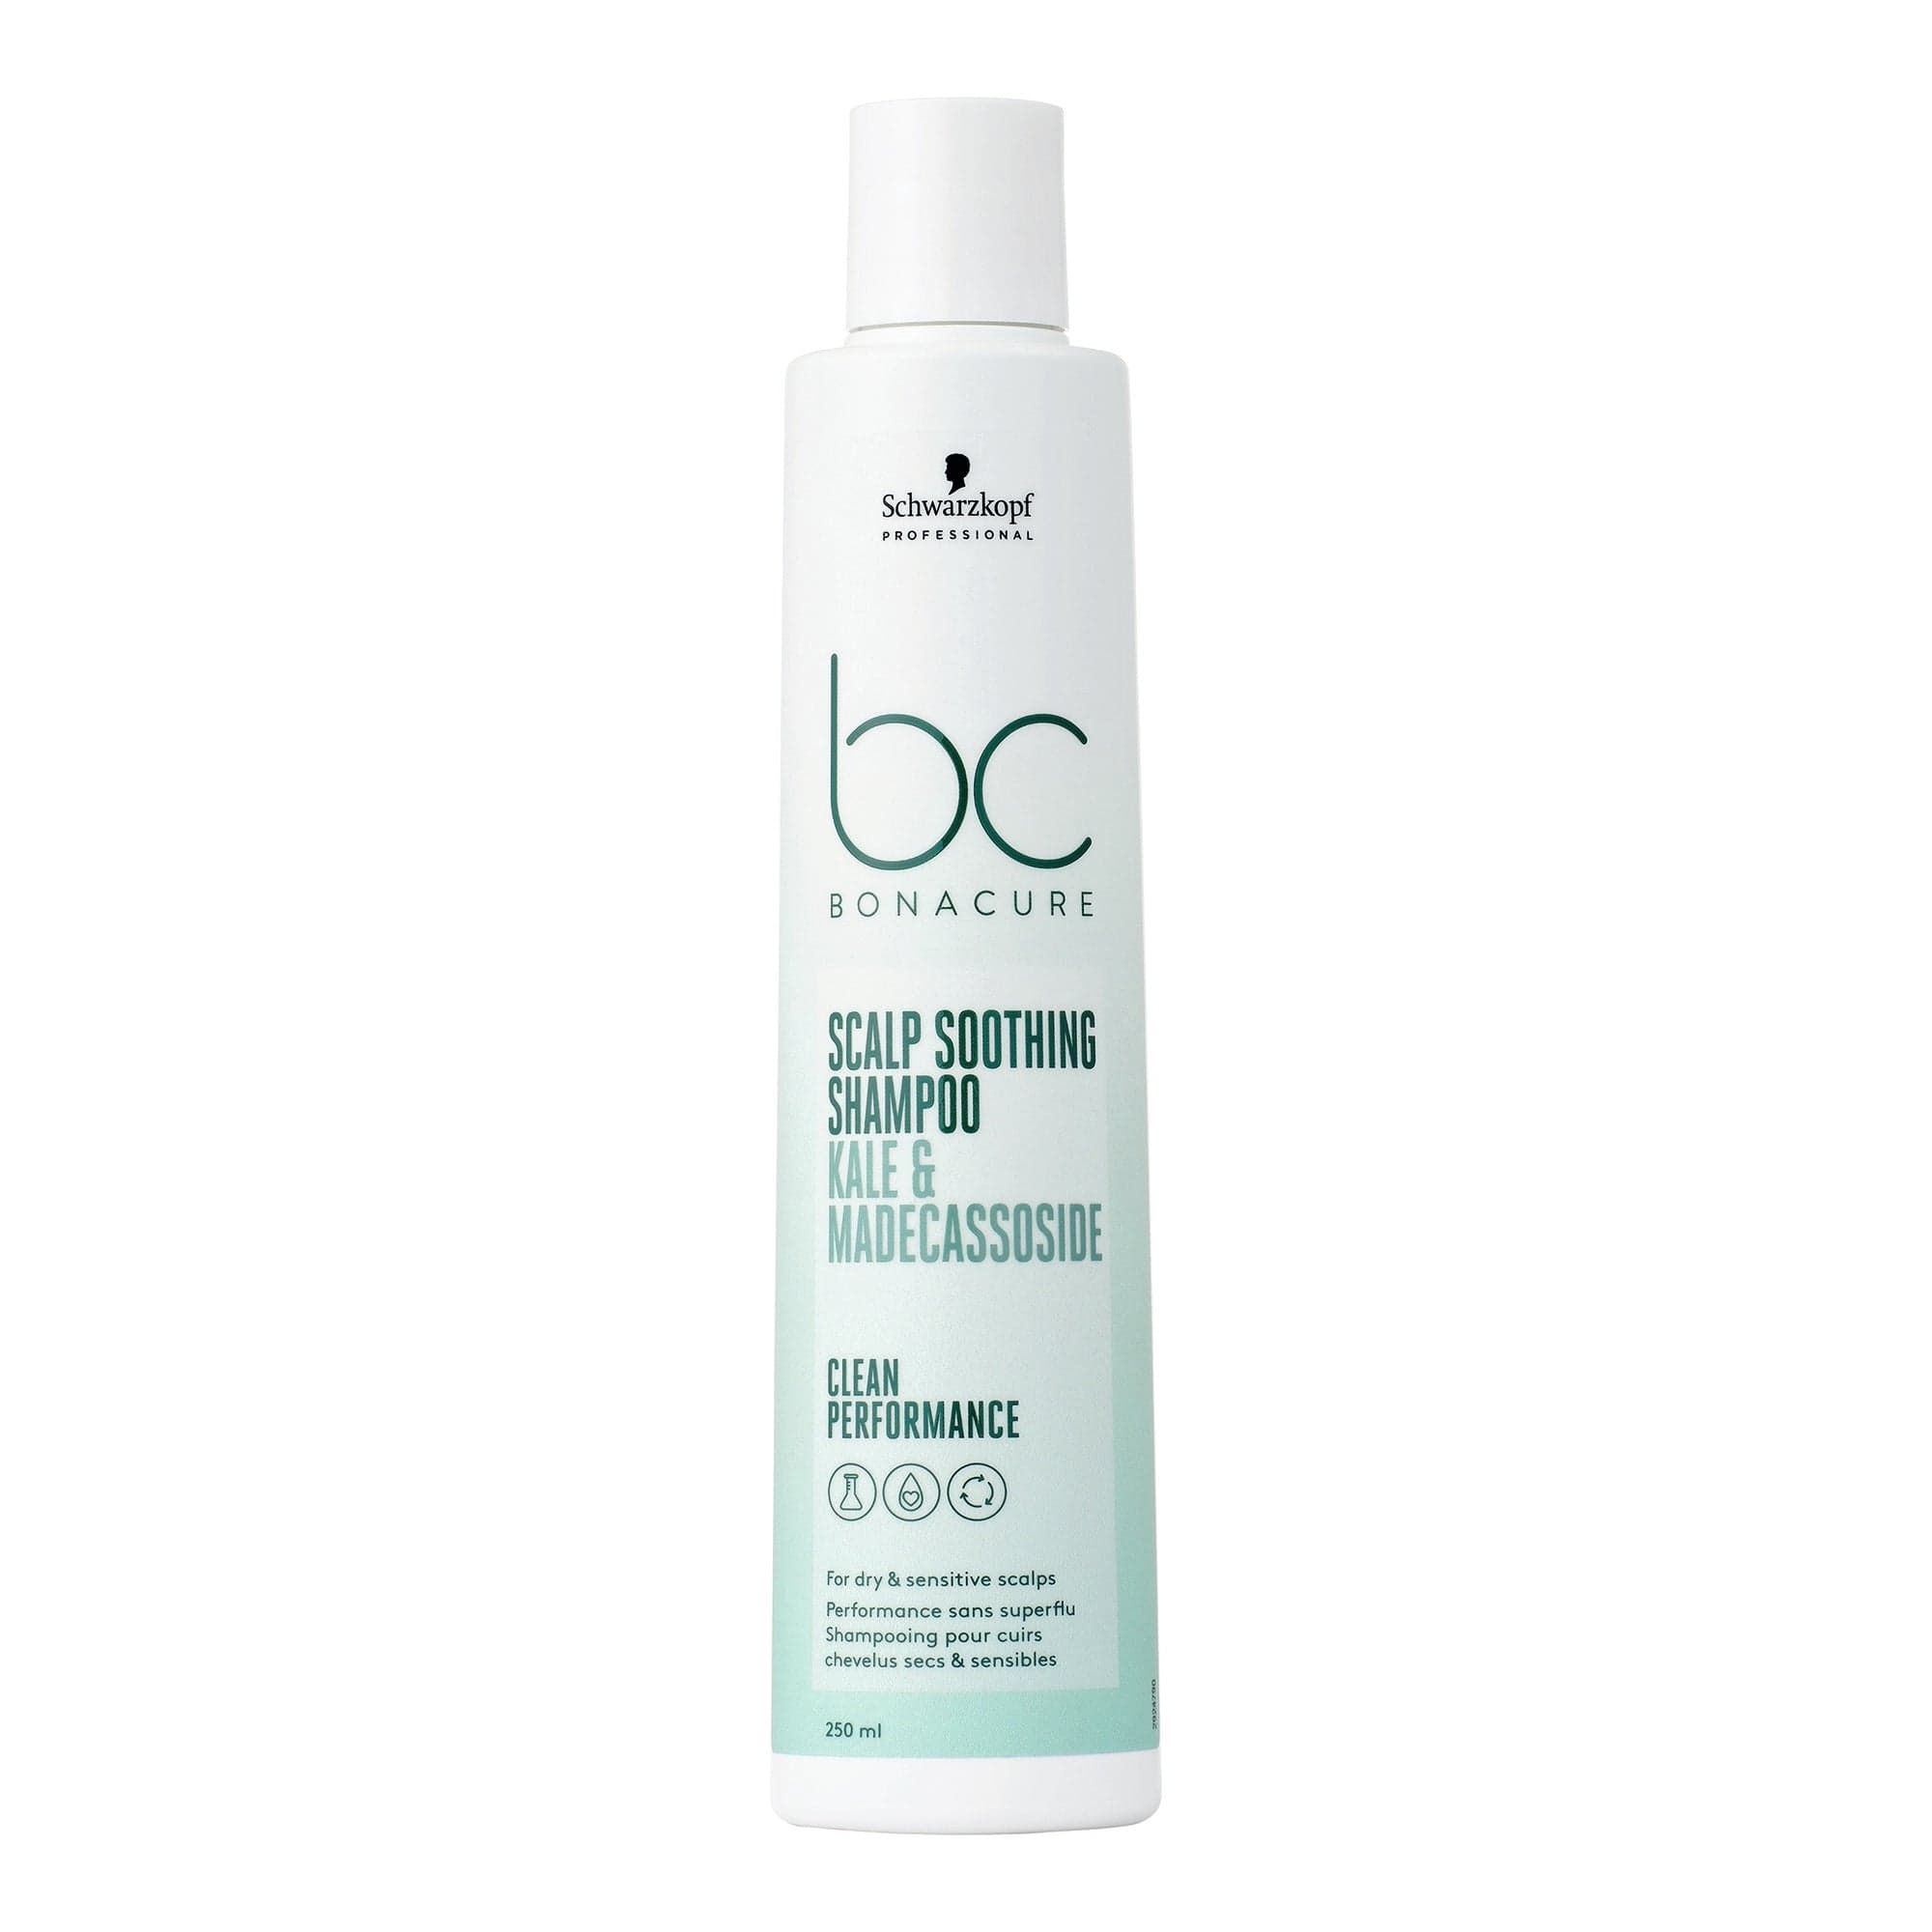 BC Bonacure Shampoo Bonacure Scalp Genesis Champú Calmante 250ml Roberta Beauty Club Tienda Online Productos de Peluqueria